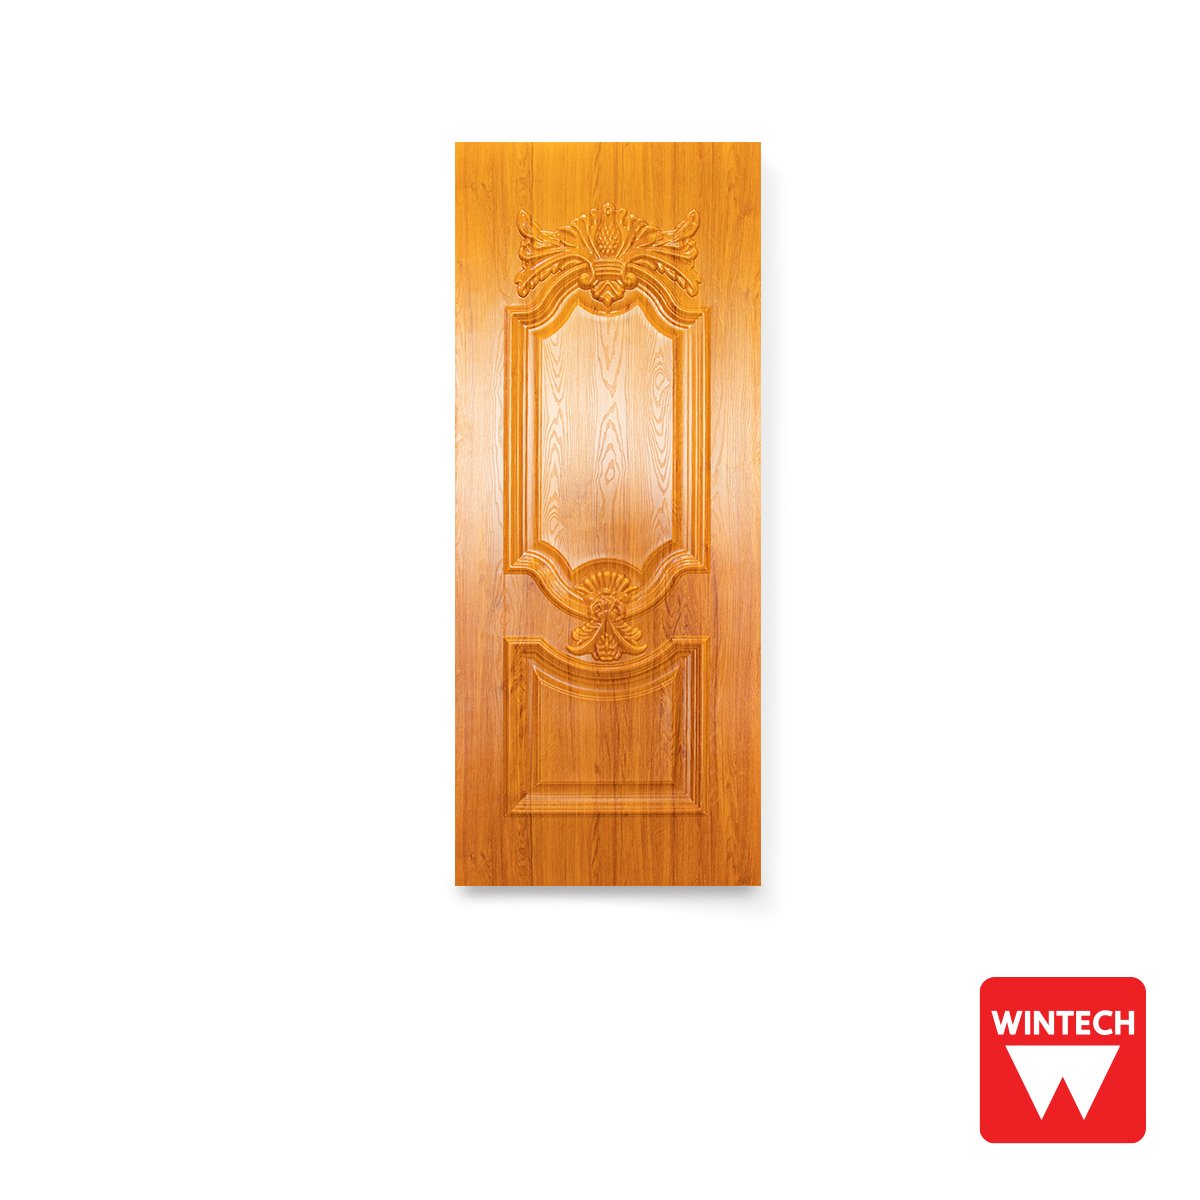 ๊UPVC Solid Door, 2 mullions, with Golden Teak Pattern, Wintech